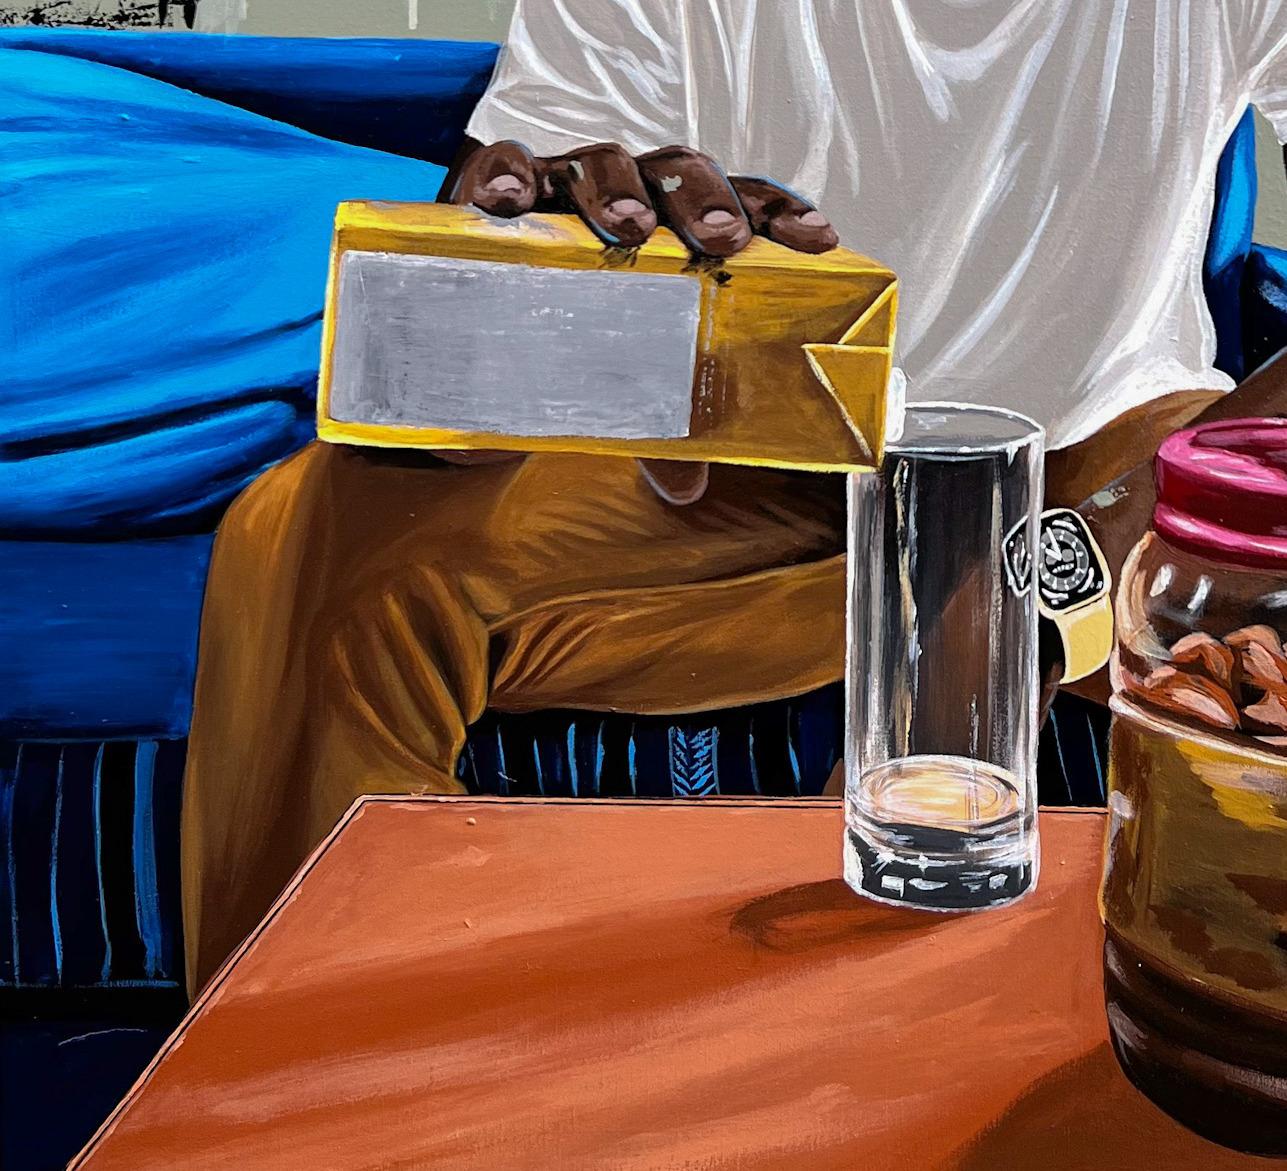 L'œuvre d'Alagbe capture magnifiquement le désir de calme et de relaxation. Le fait de verser un jus de fruit dans une tasse en verre représente la quête d'une boisson apaisante pour calmer les nerfs et rajeunir l'esprit. Les couleurs vives du jus